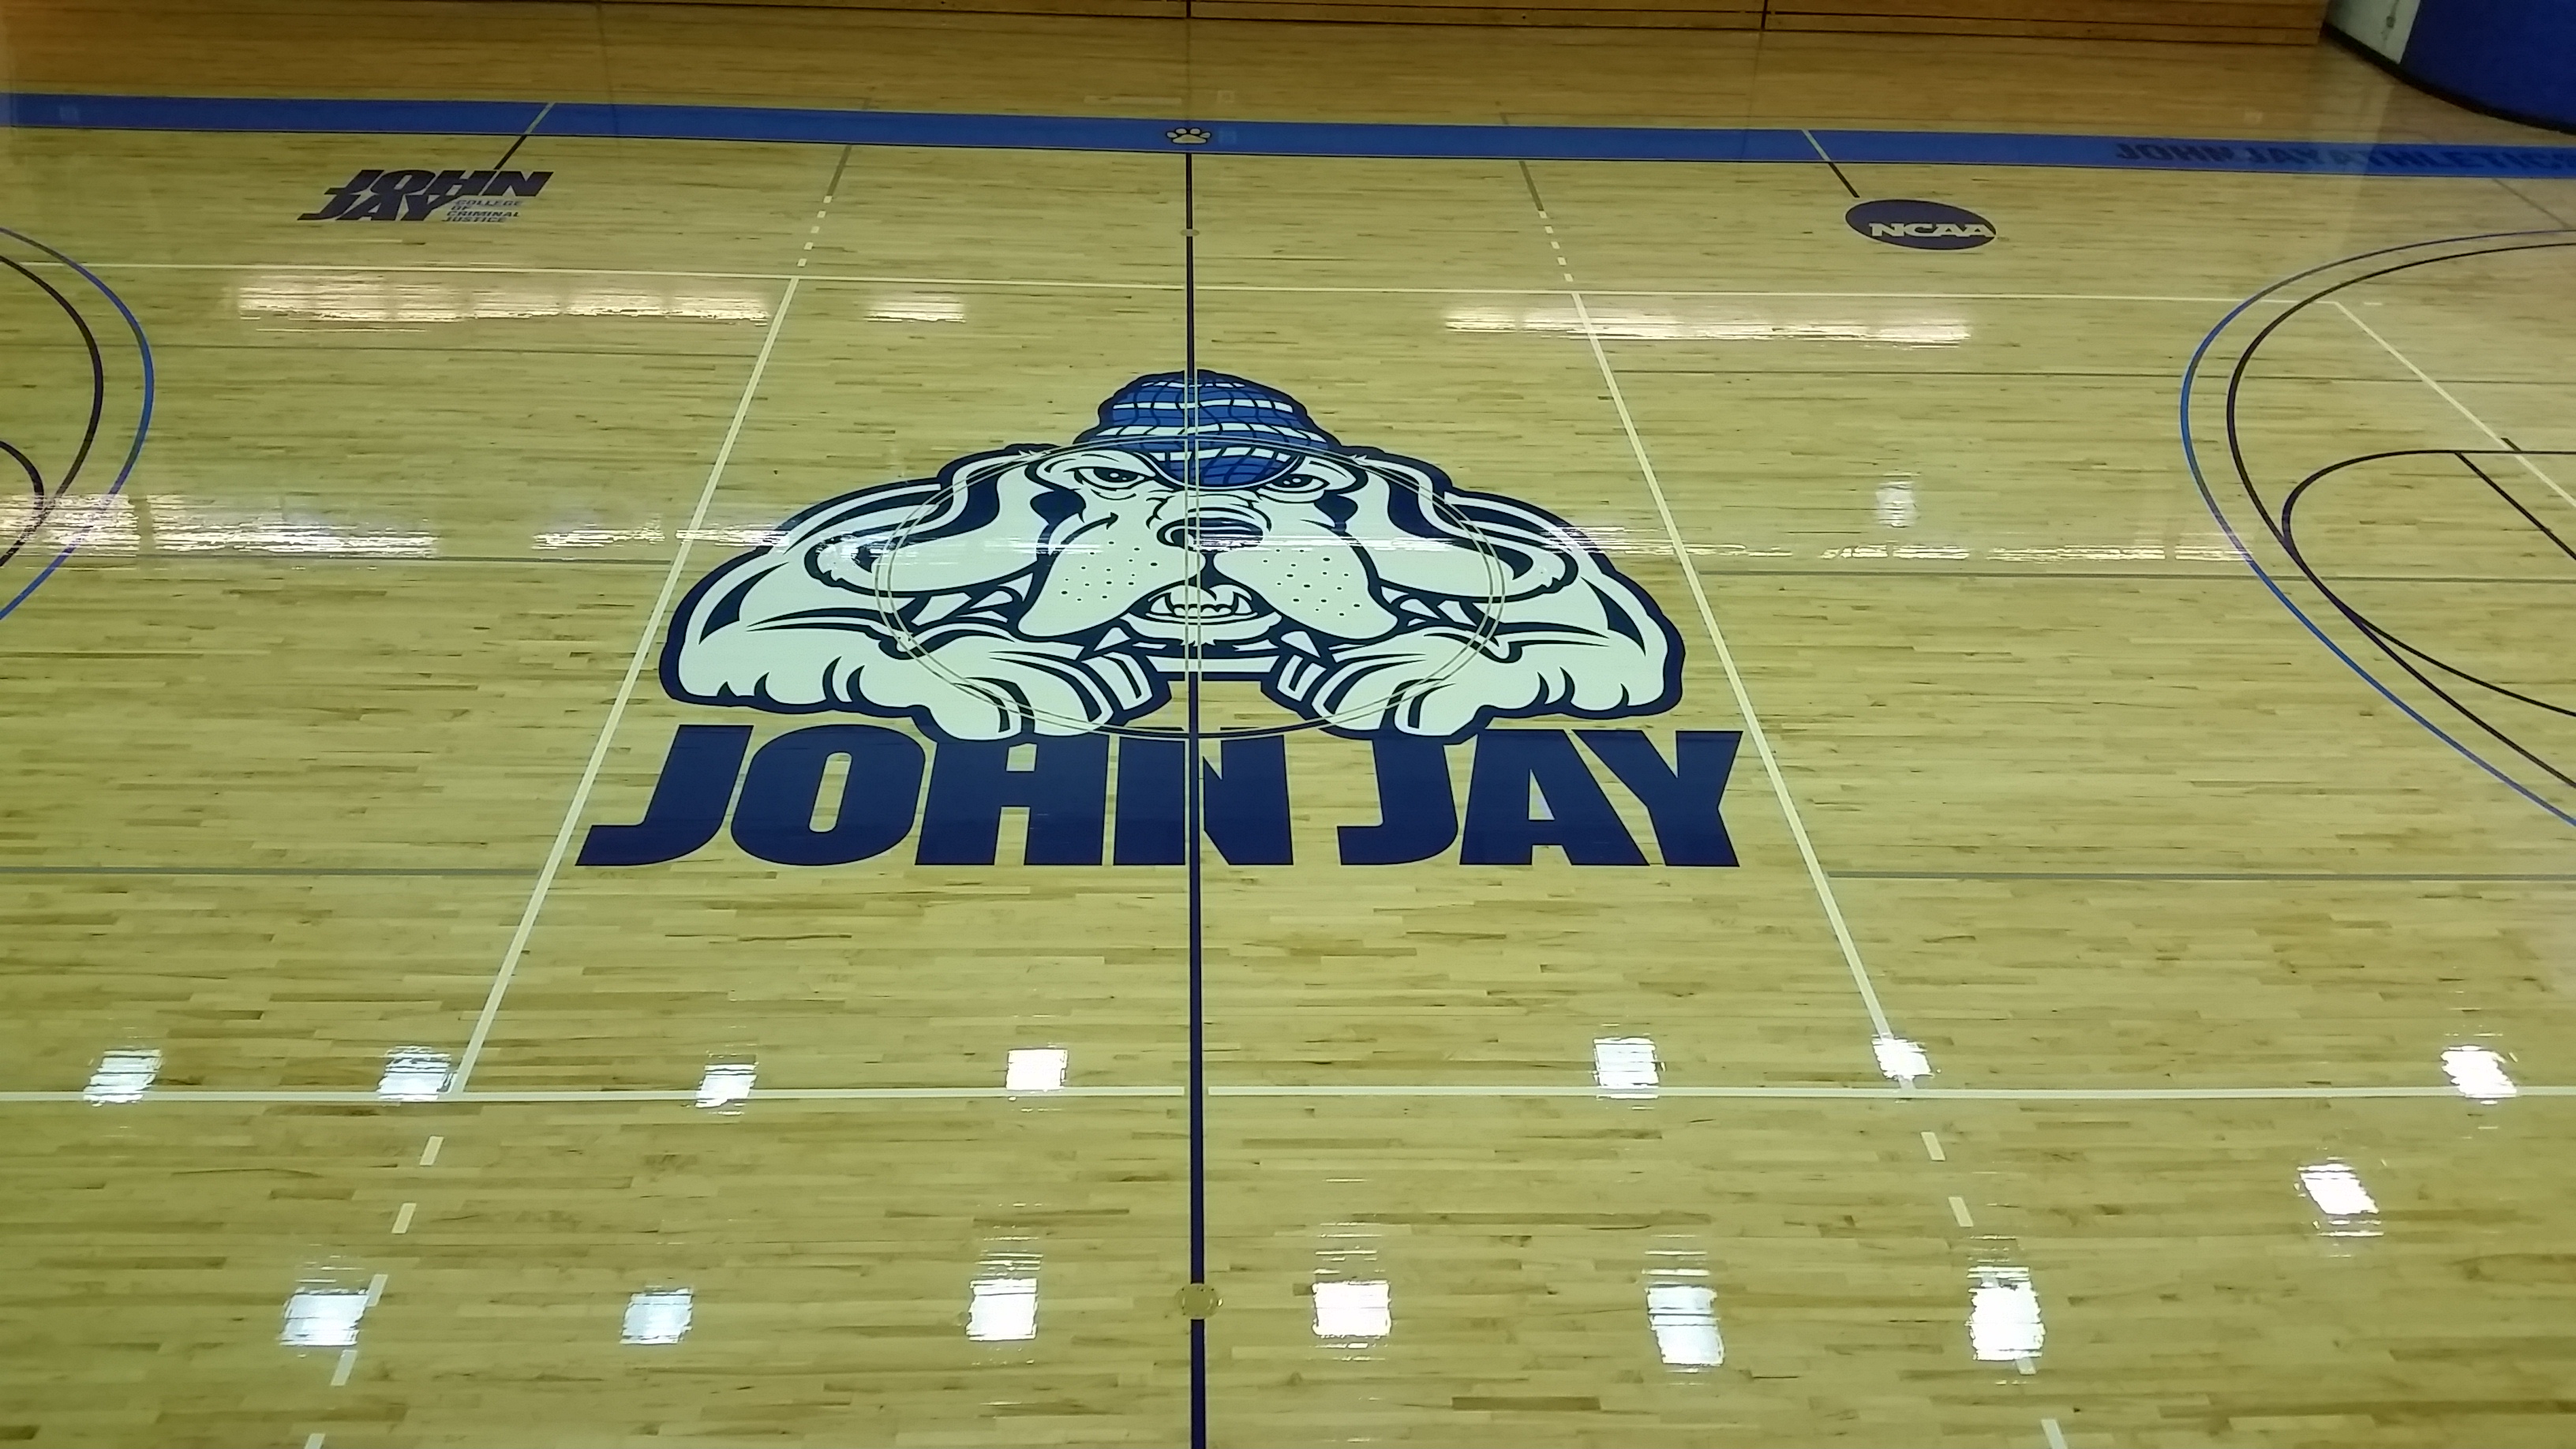 Gym floor sanding and repair - John Jay